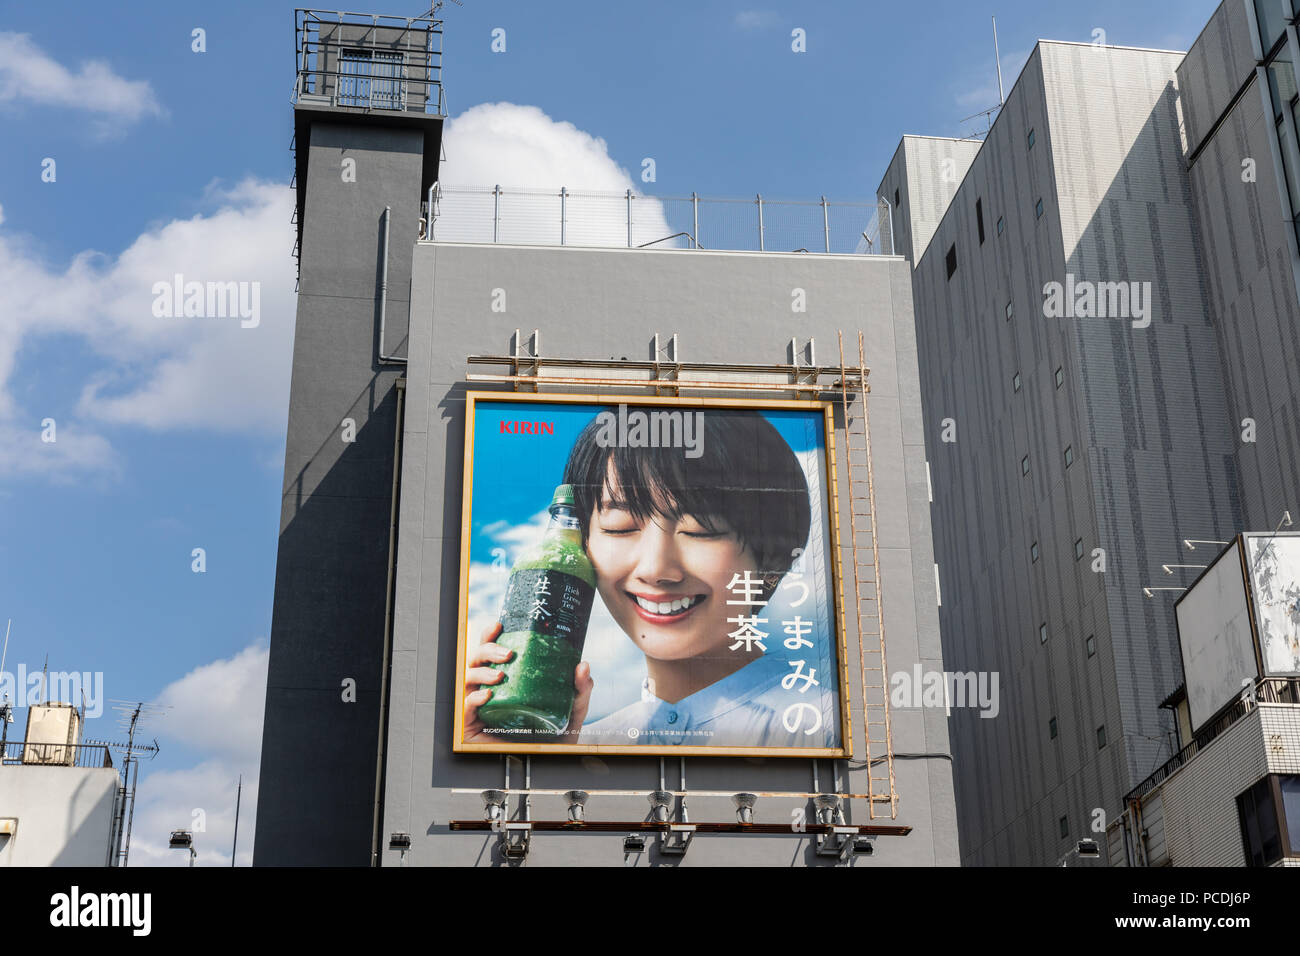 Kirin, ricca di Tè verde (Giapponese: 'Non namacha umami' = 'il sapore del tè grezzo'), affissioni su edificio; Tokyo, Giappone Foto Stock